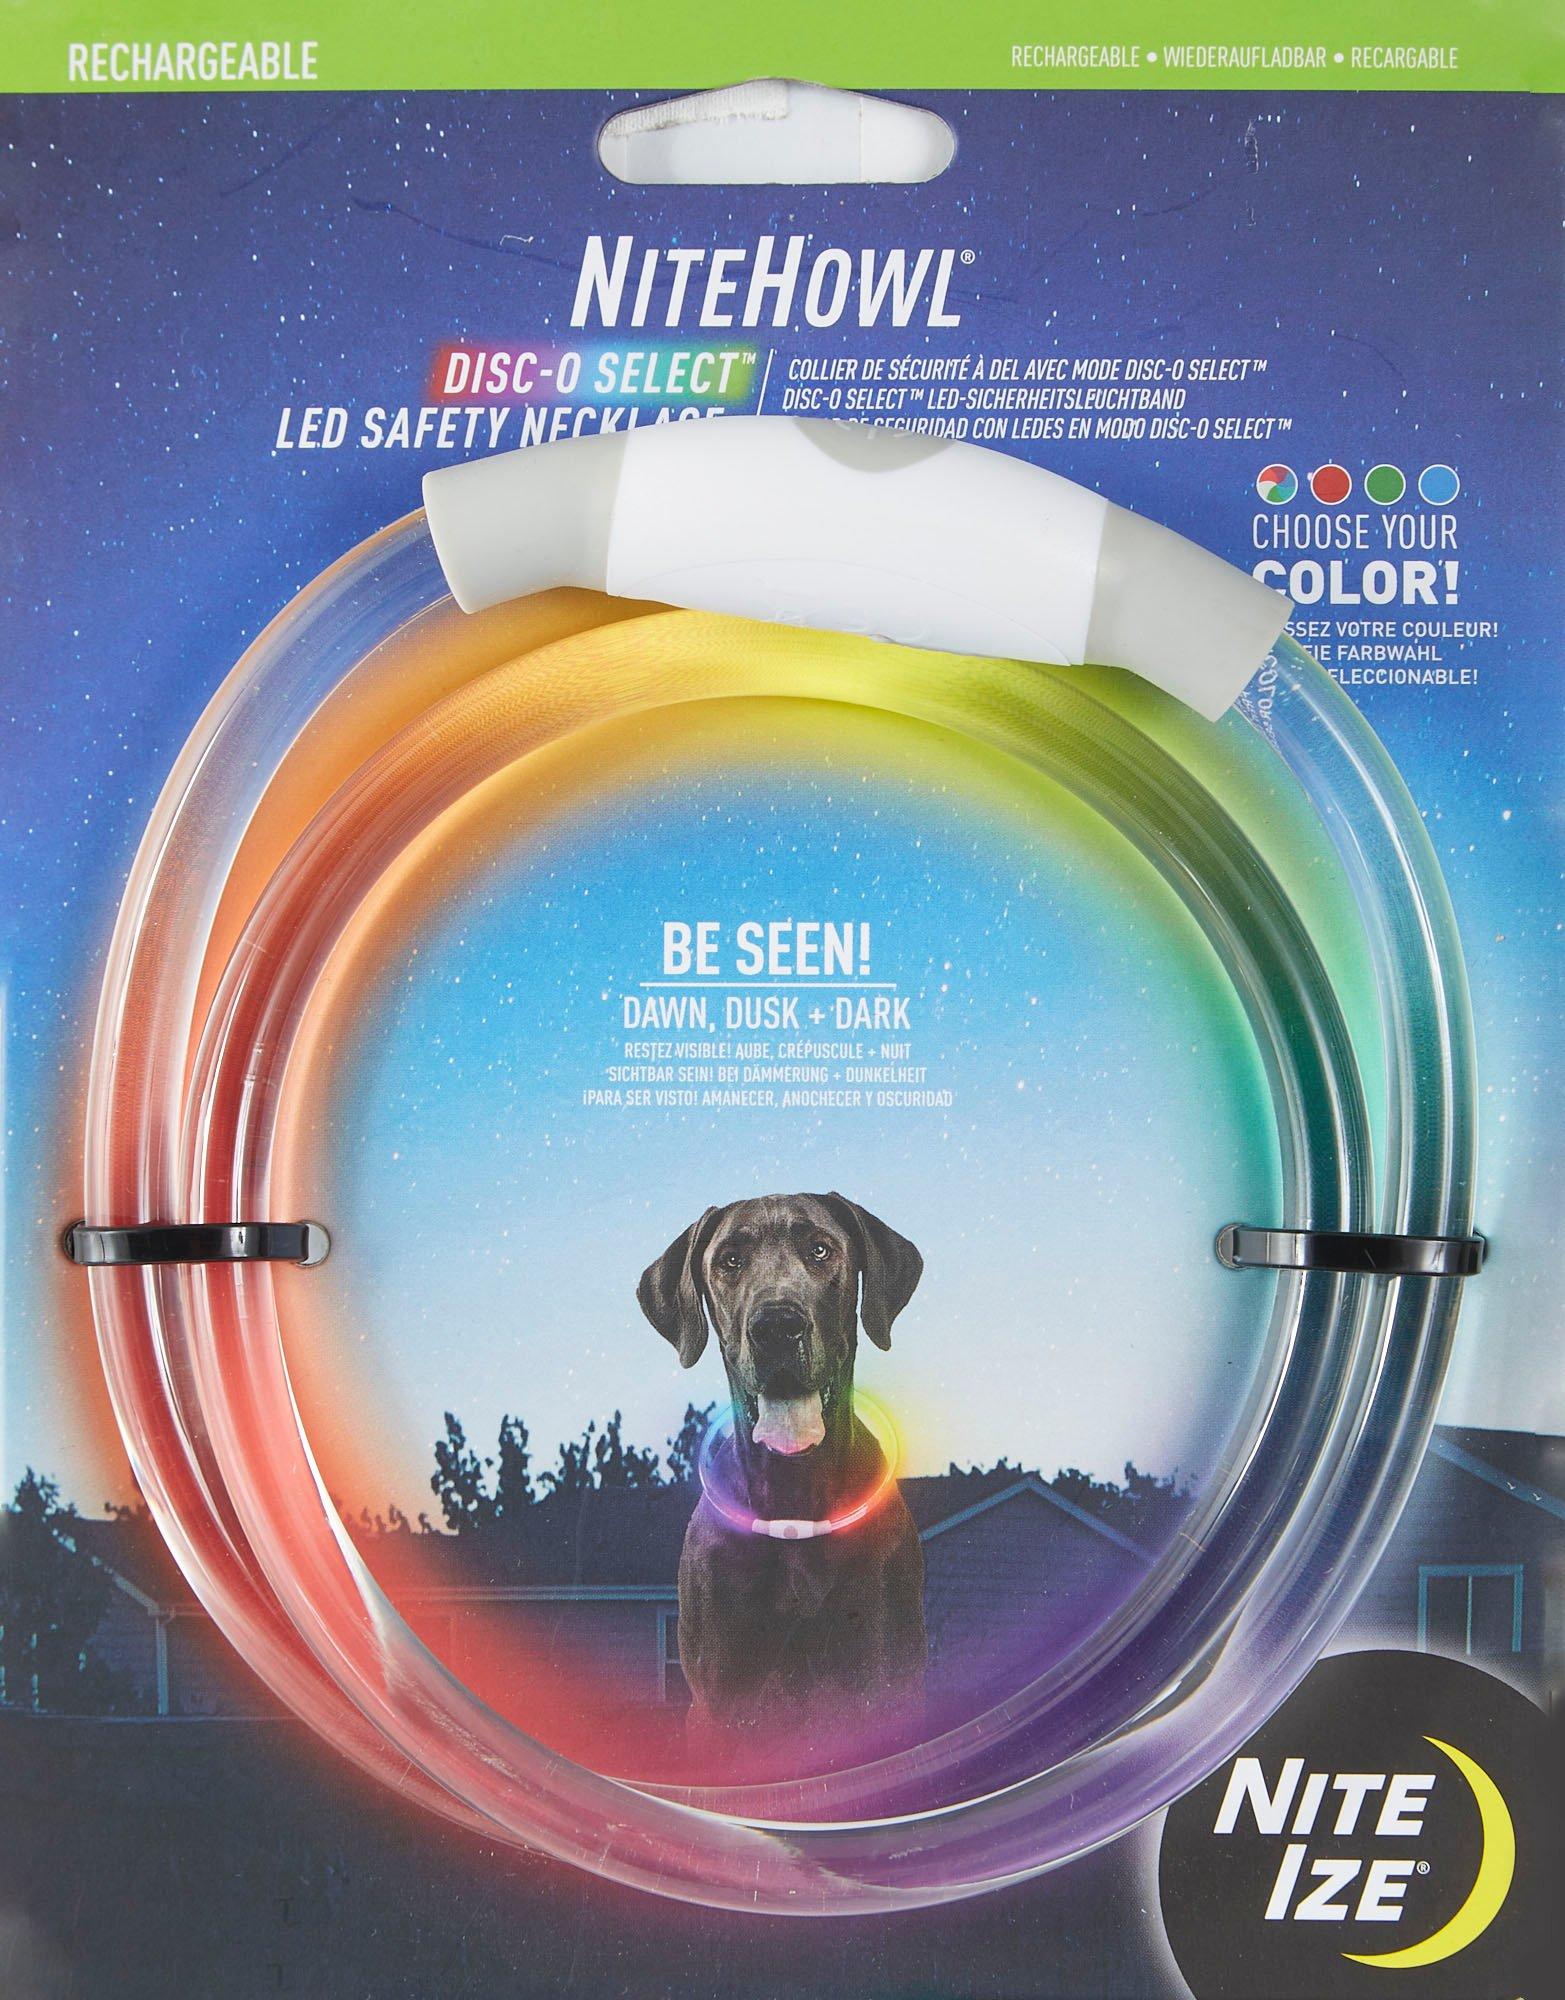 Nite Ize NiteHowl Disc-O Select LED Safety Necklace